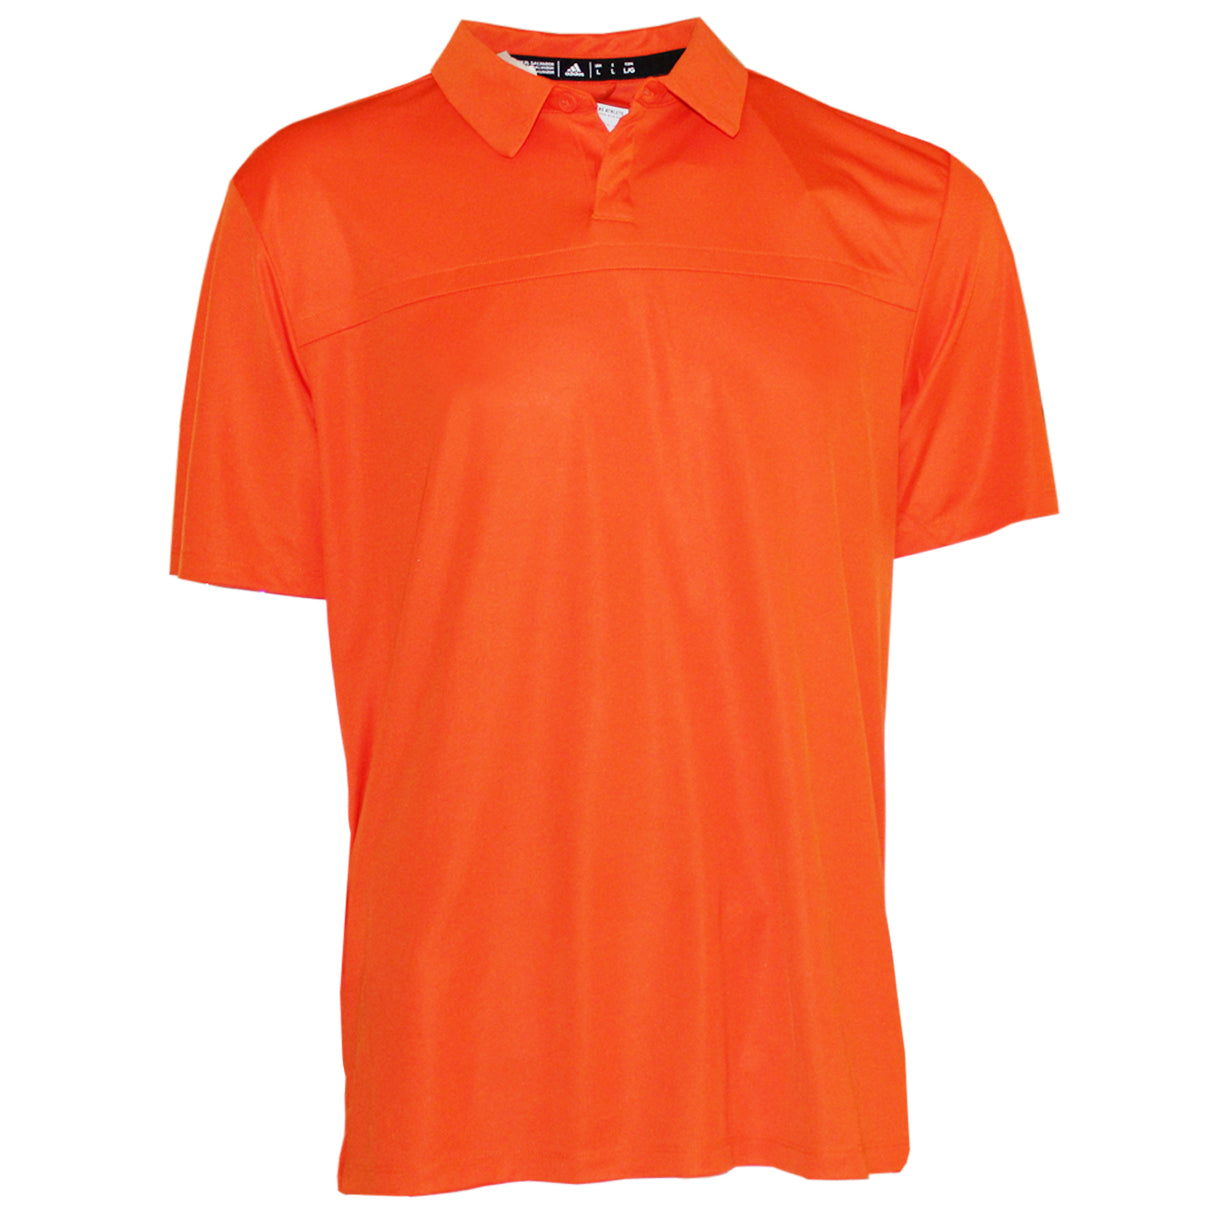 Adidas Men's Aeroready Urban Polo Golf Shirt